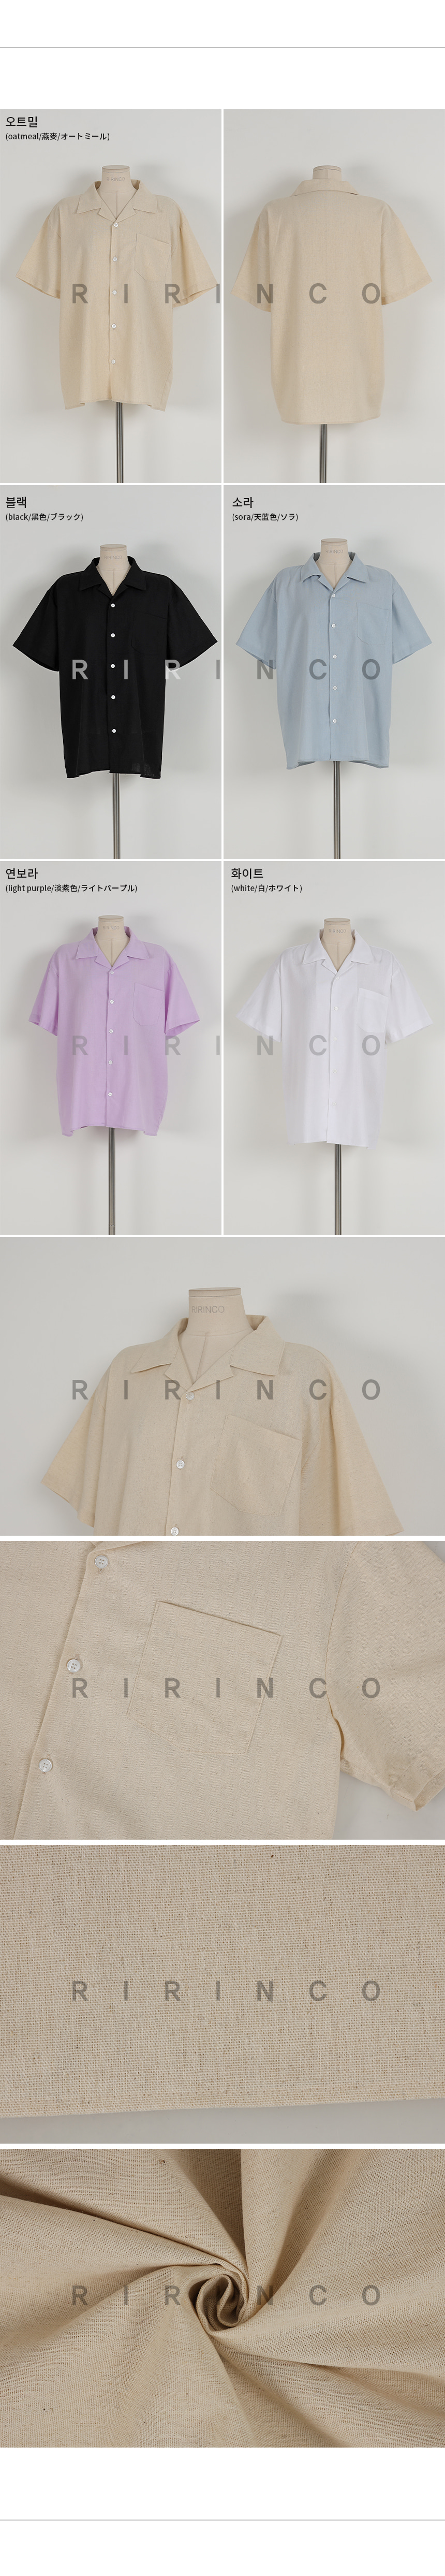 RIRINCO リネンルーズフィットカラーネックシャツ